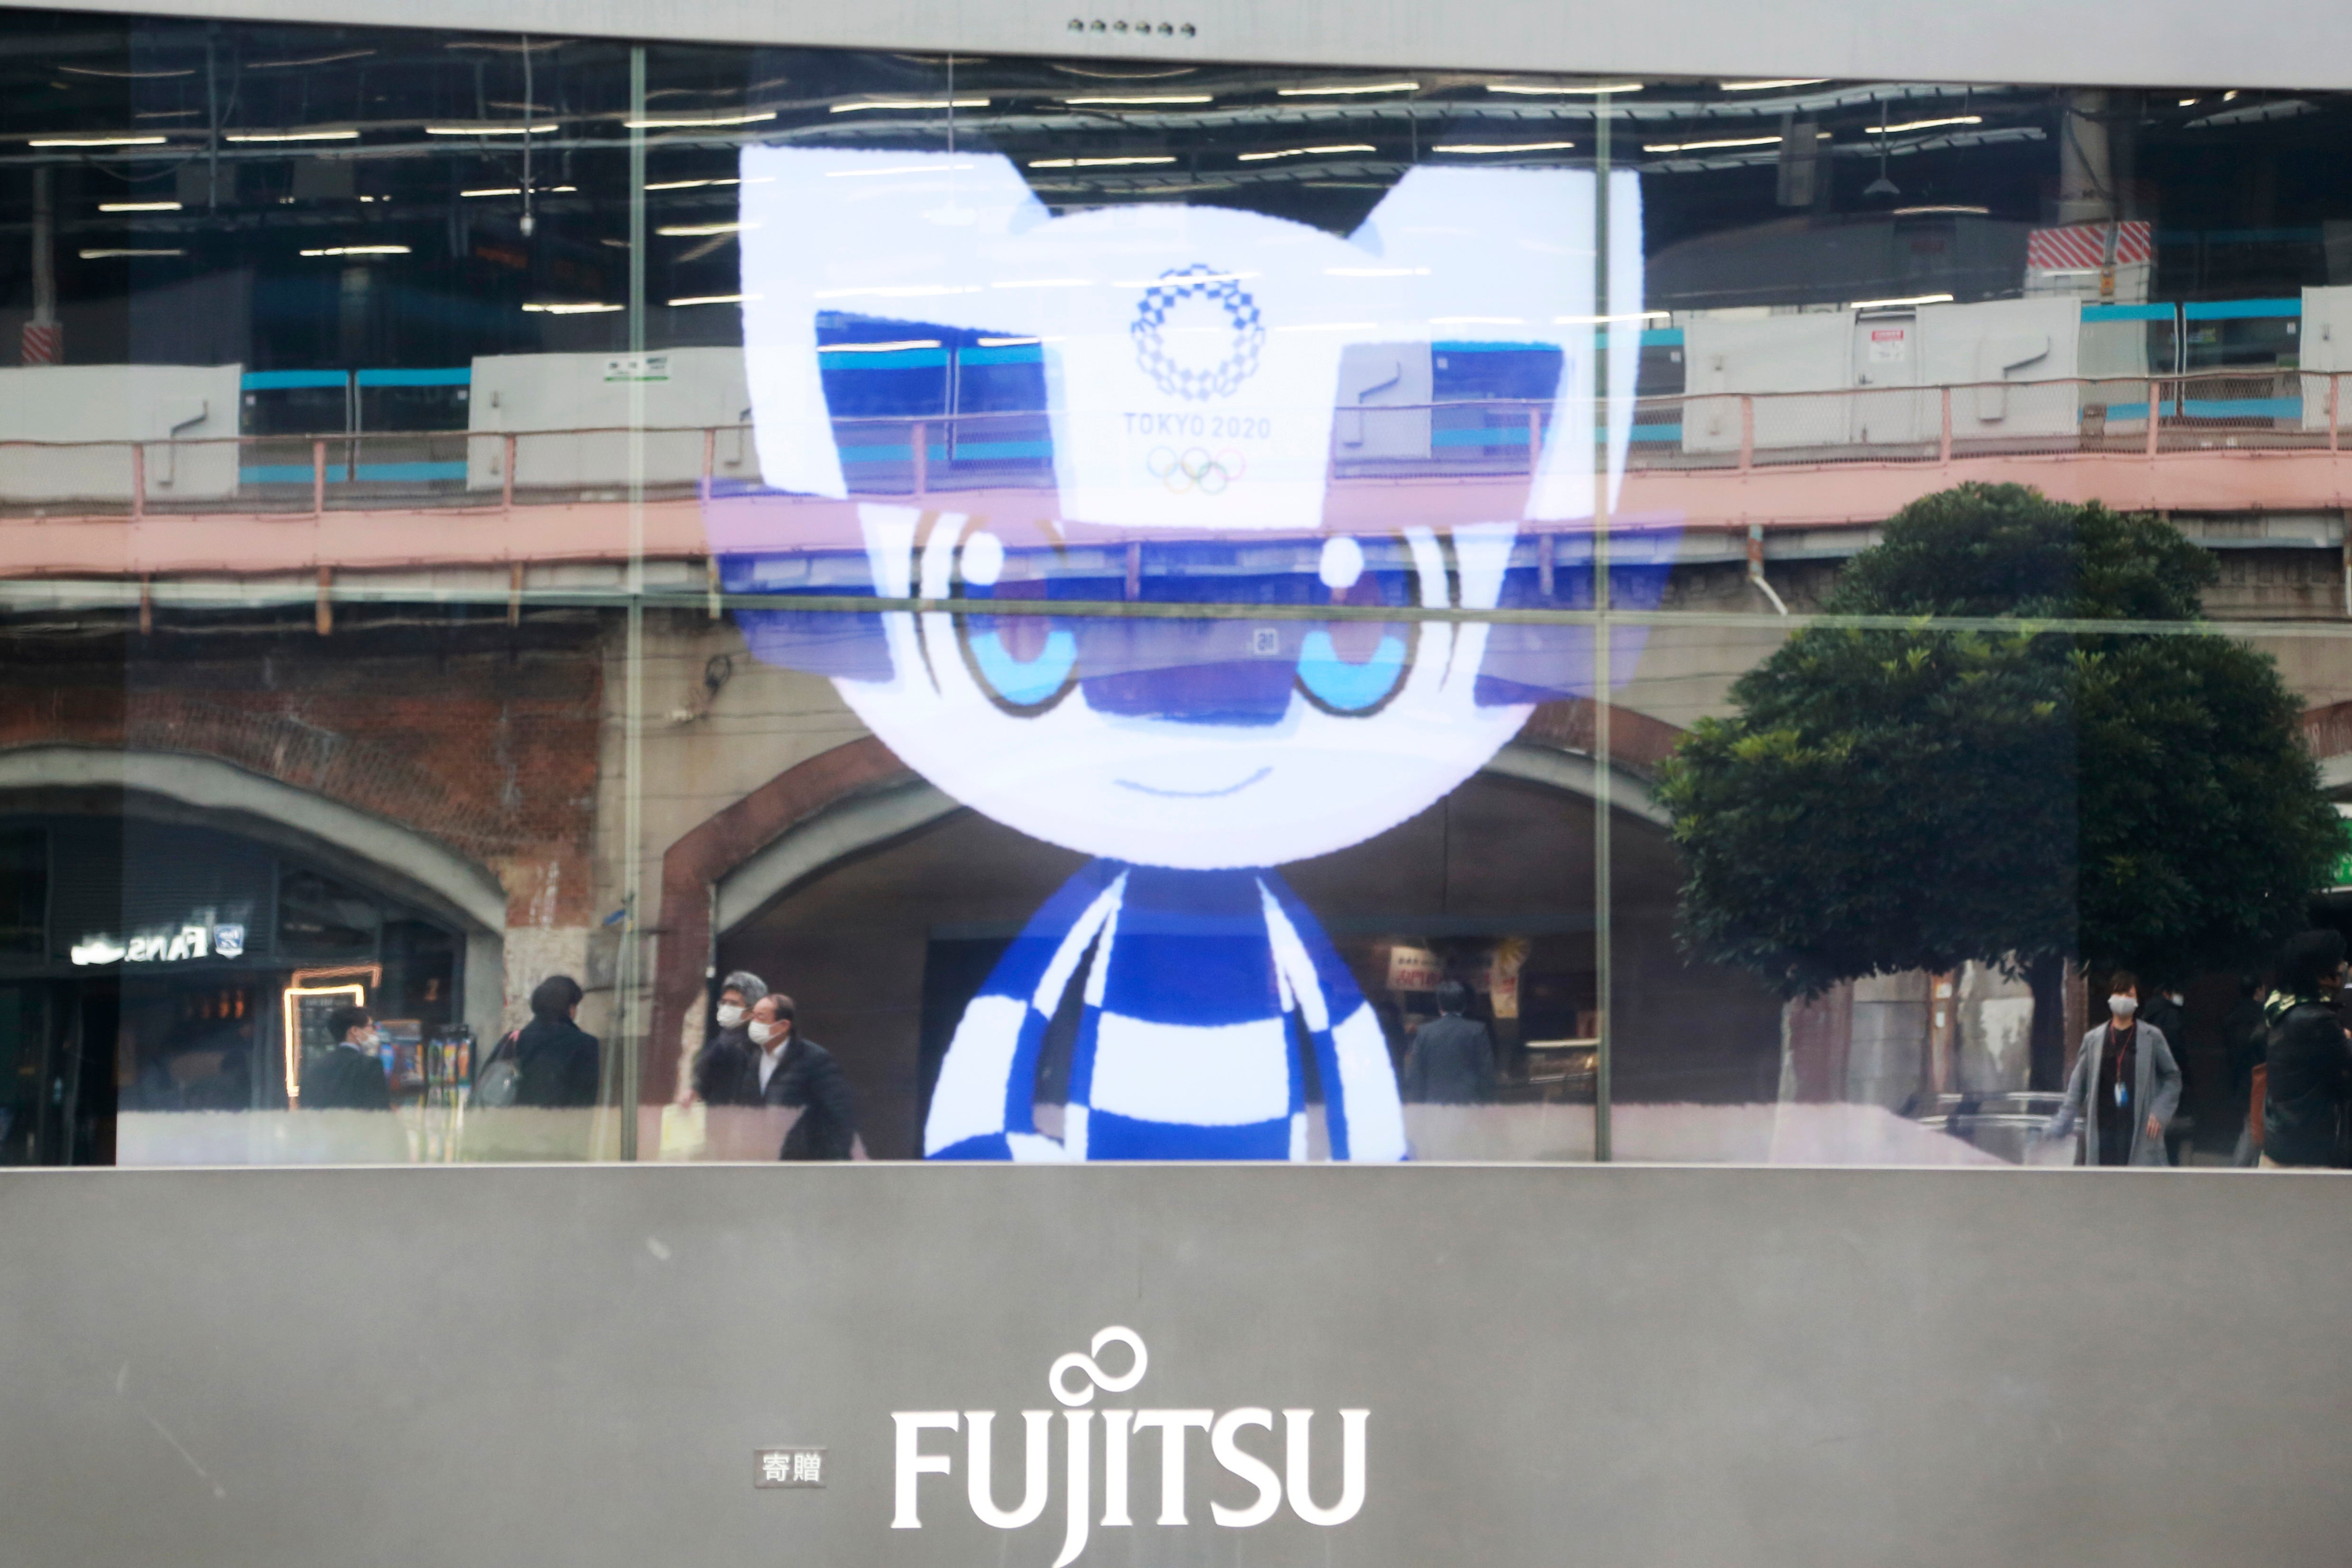 Un televisor muestra a Miraitowa, mascota de los Juegos Olímpicos de Tokio.